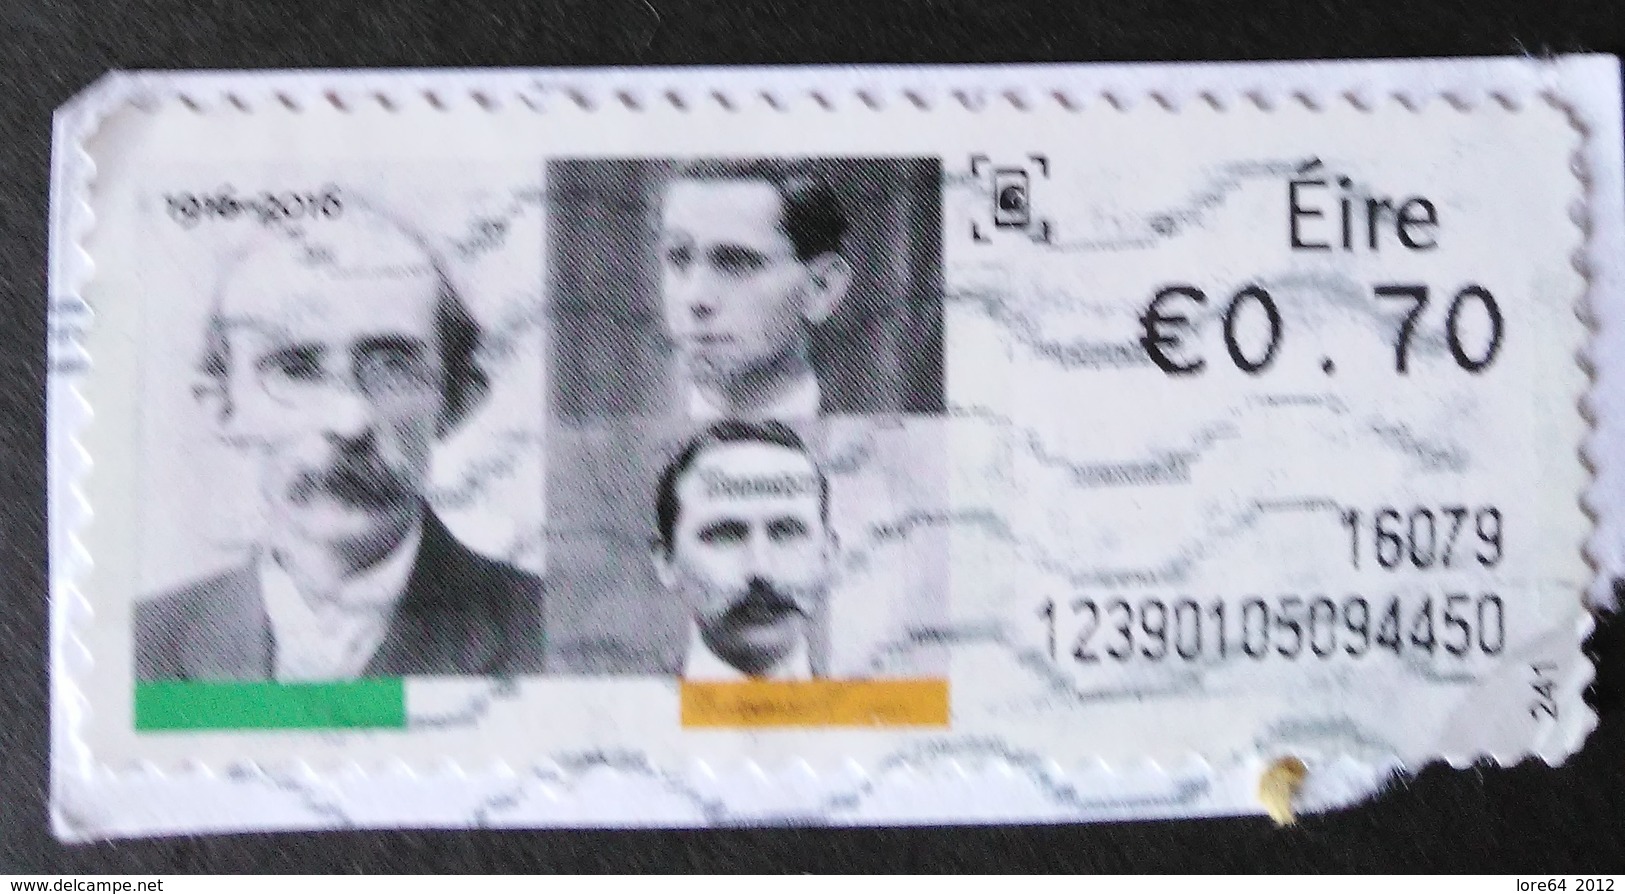 IRLANDA ATM 2016 - Vignettes D'affranchissement (Frama)